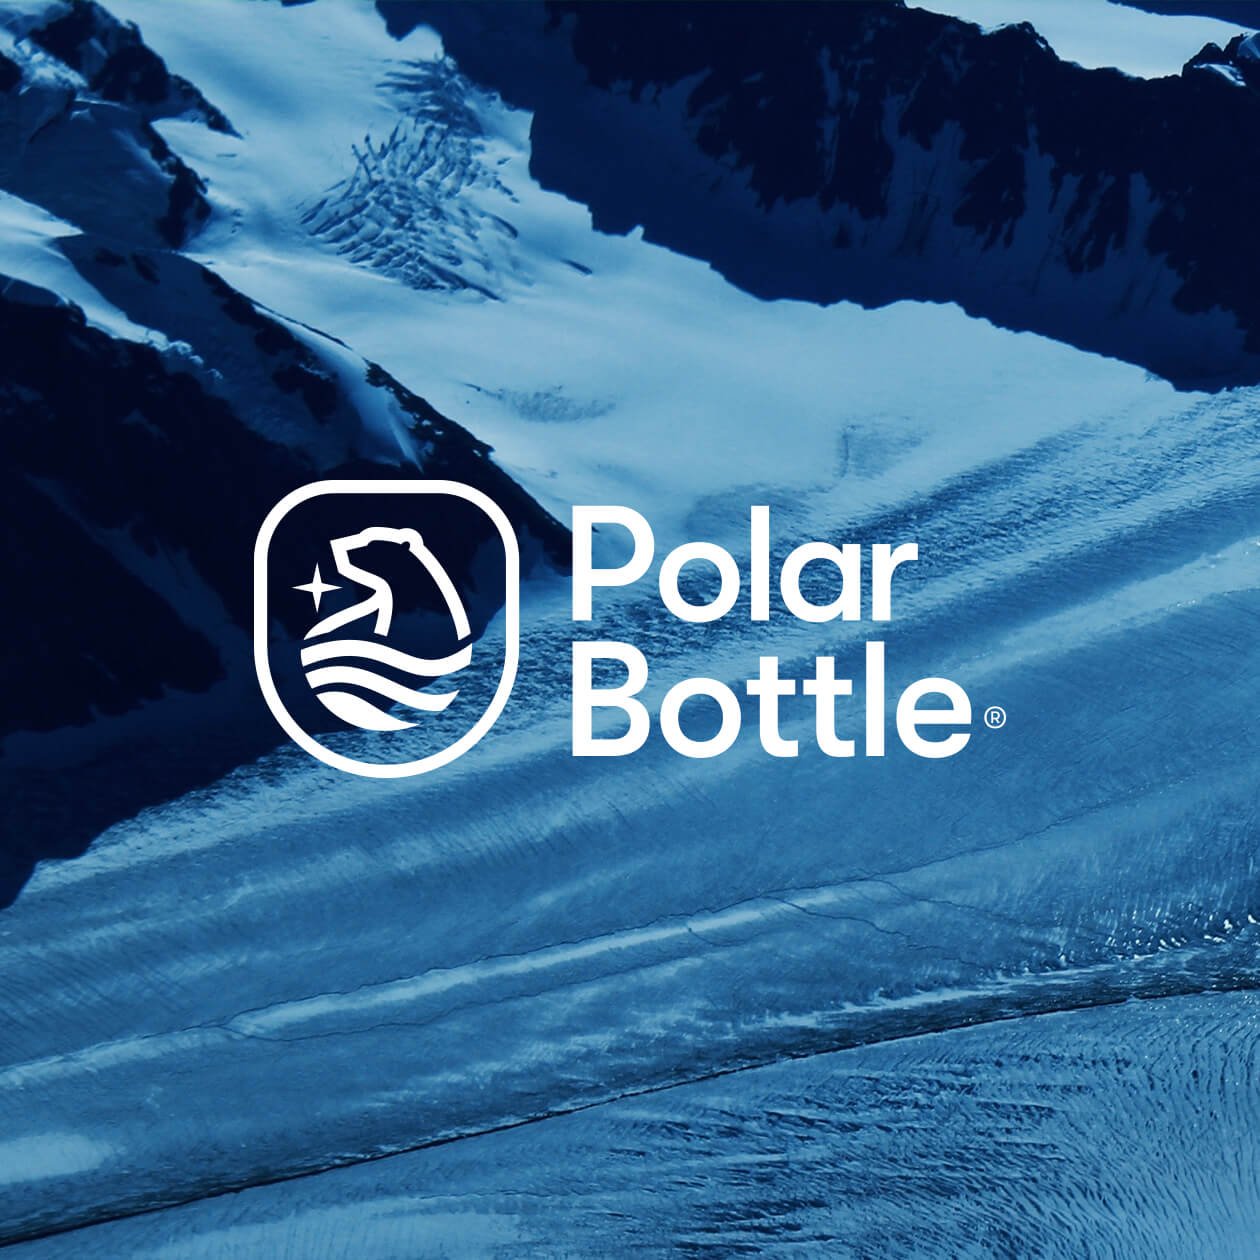 Polar Bottle Image